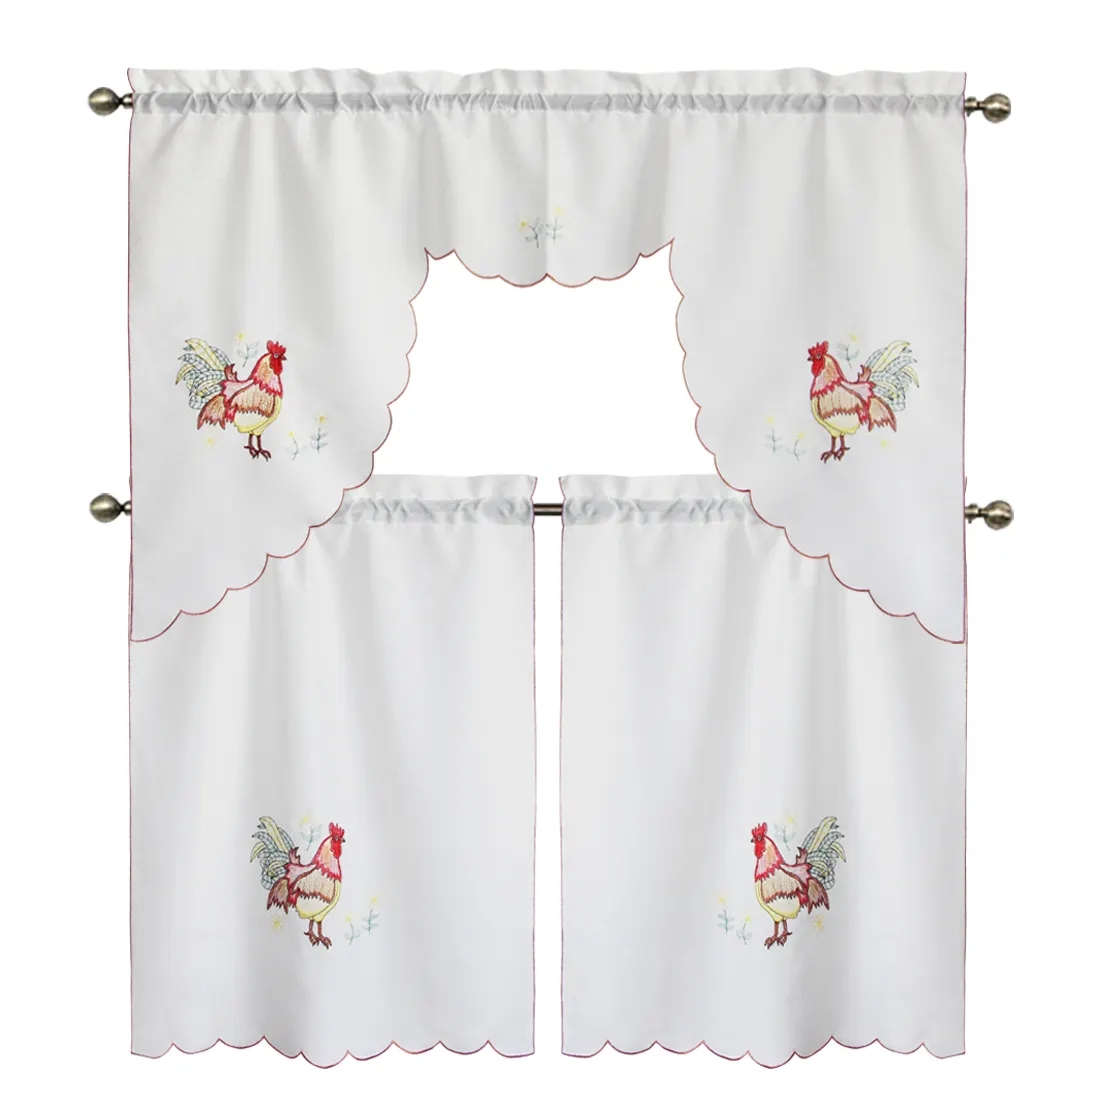 Cortina bordada de 36 polegadas, conjunto de 3 peças de cortinas para lavanderia